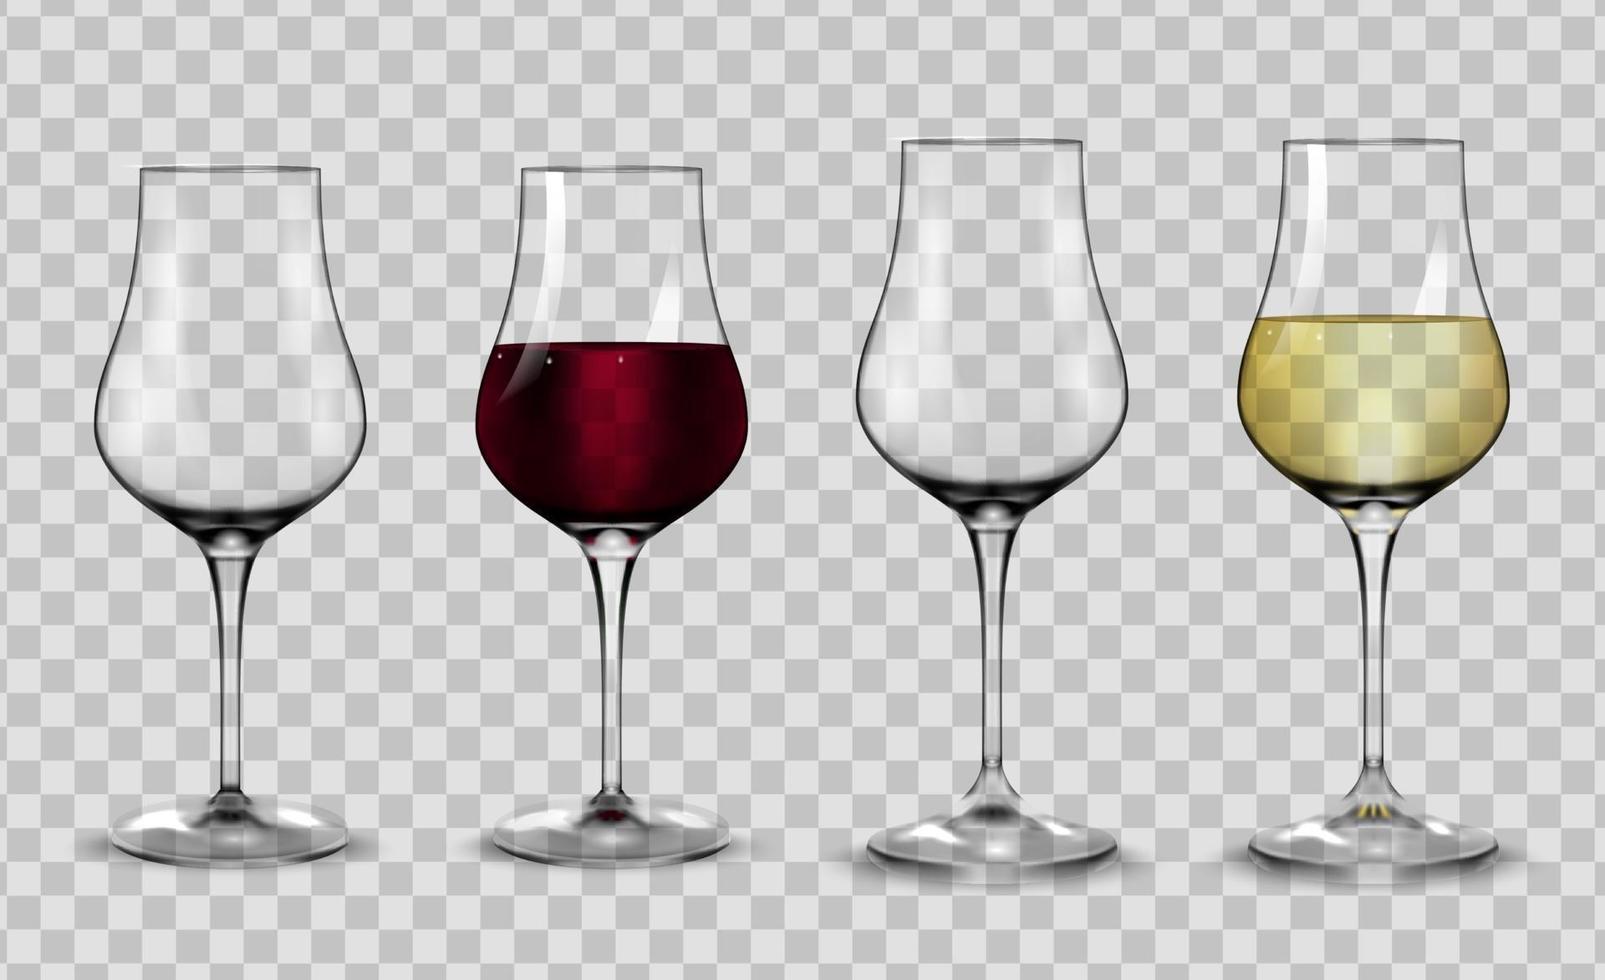 fulla och tomma glas för vitt och rött vin. vektor